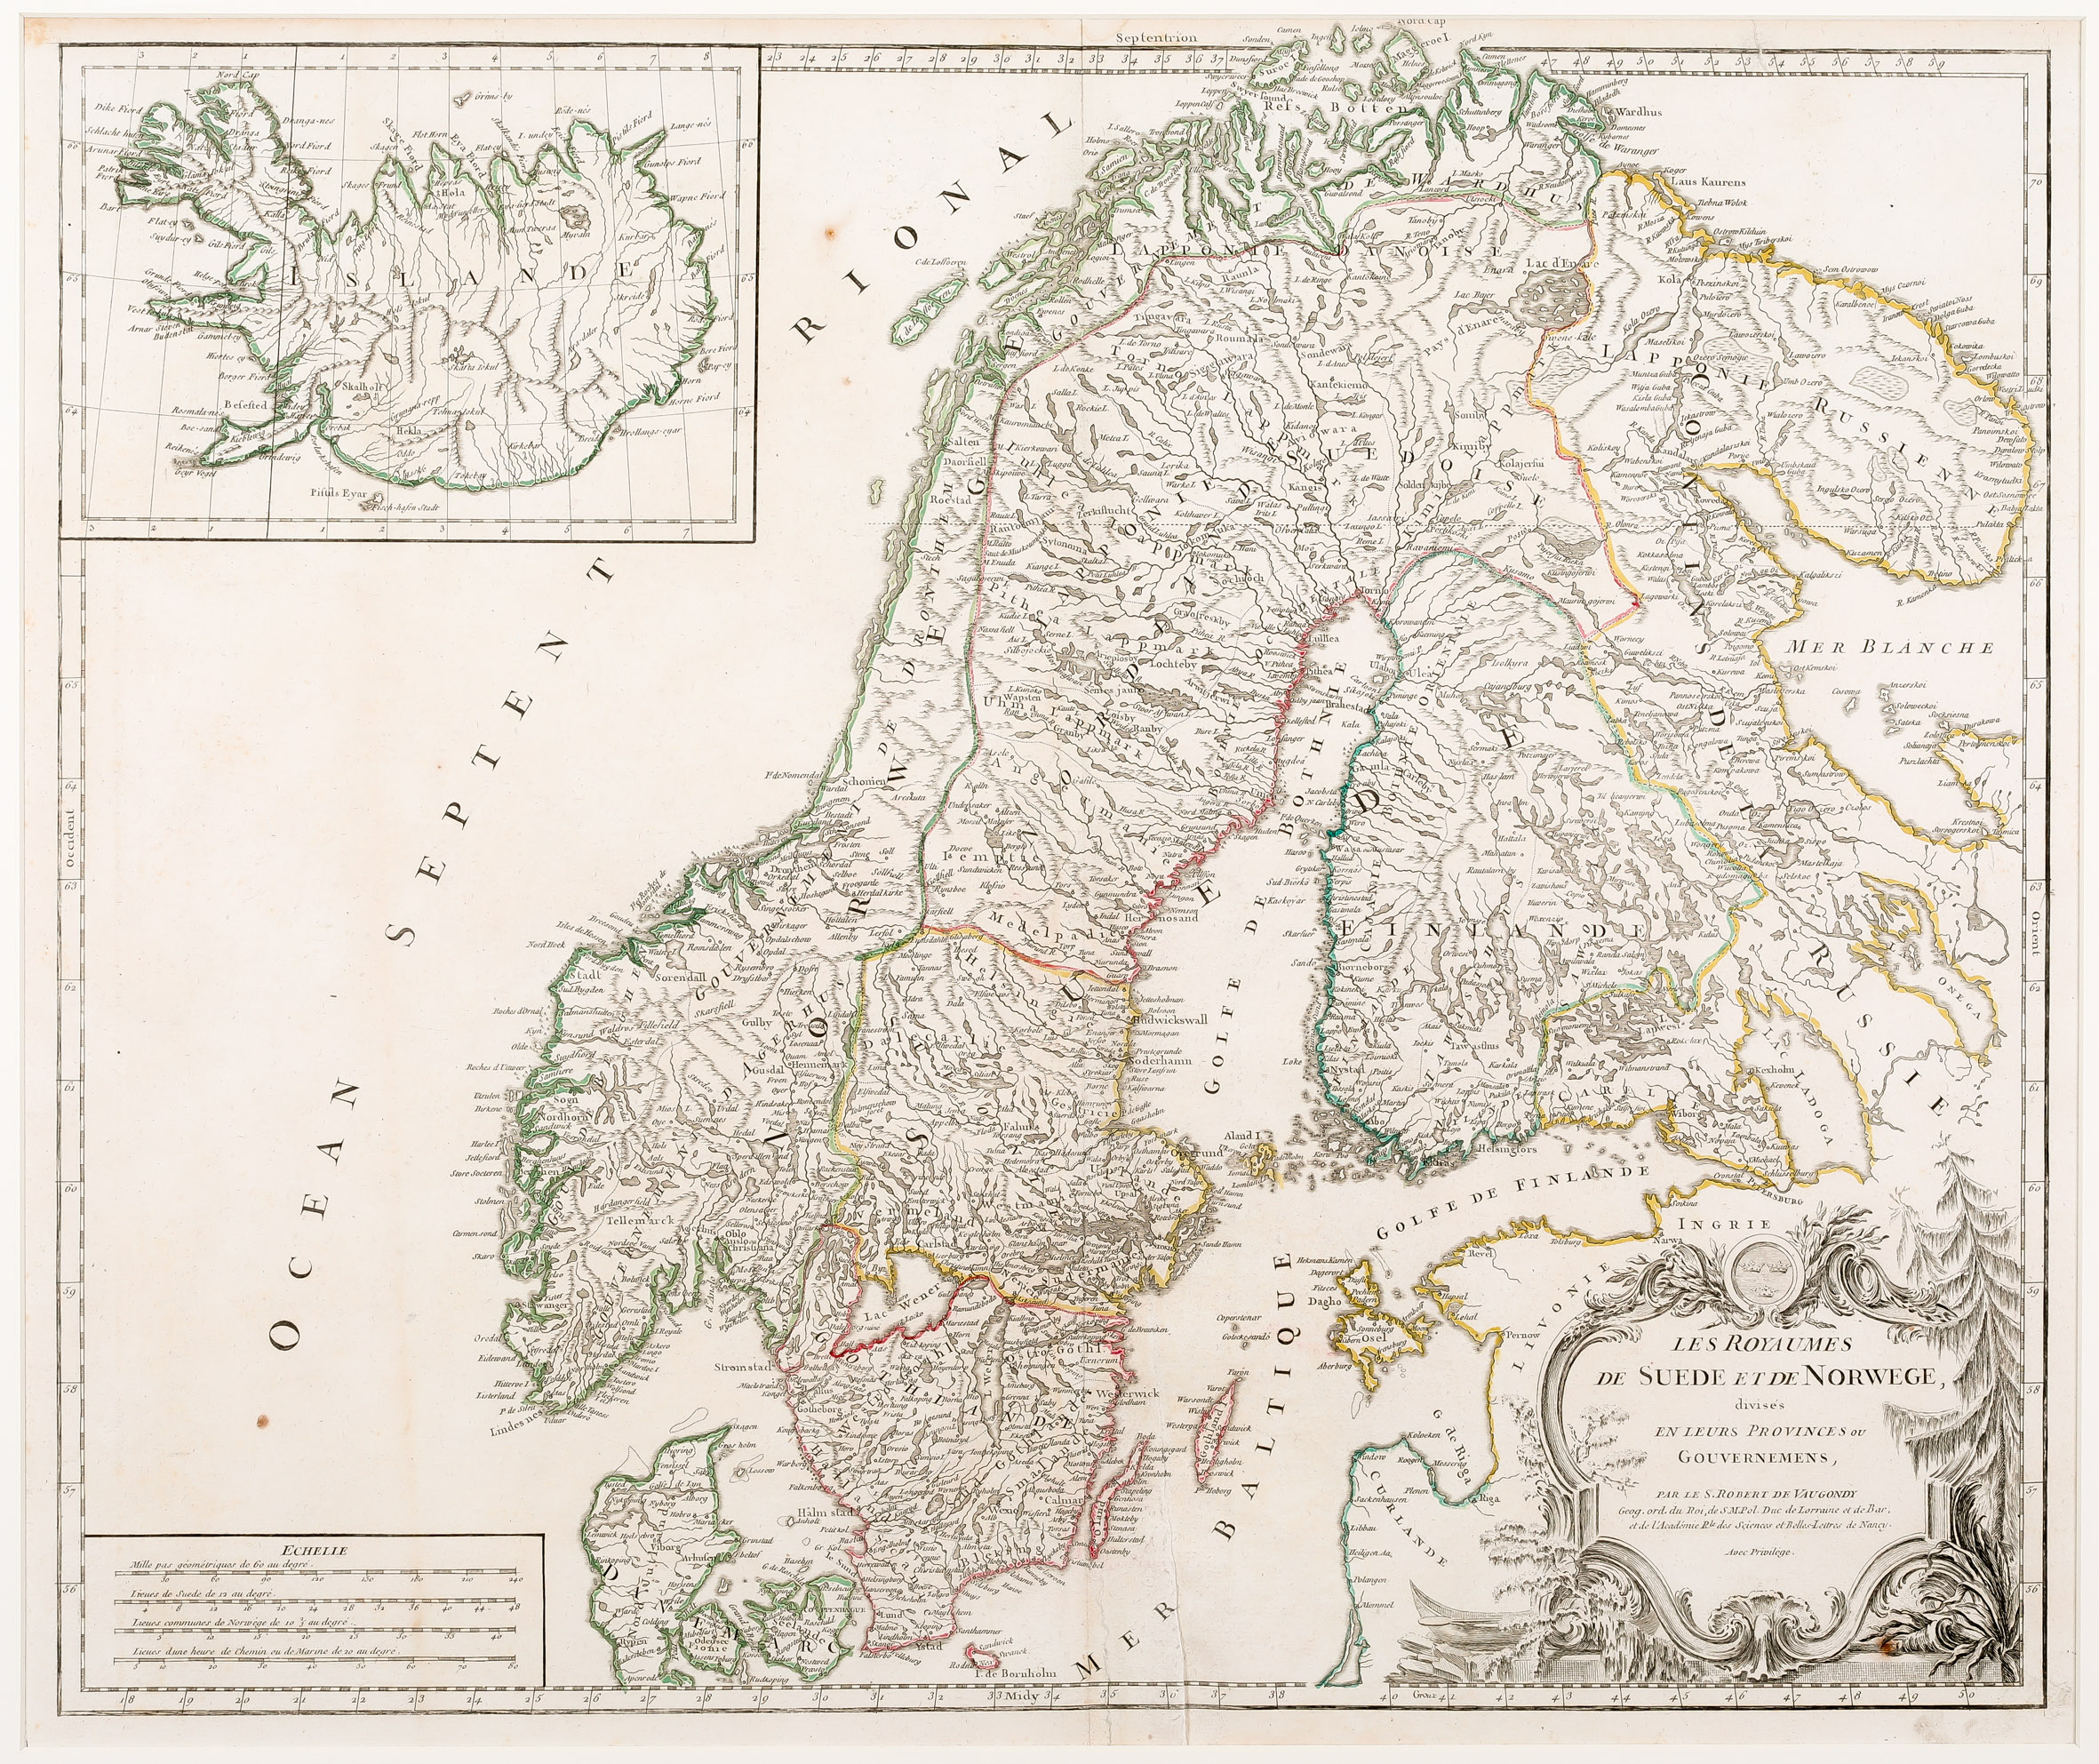 126. Les Royaumes de Suede et de Norwege, divises en leurs Provinces ou Gouvernemens